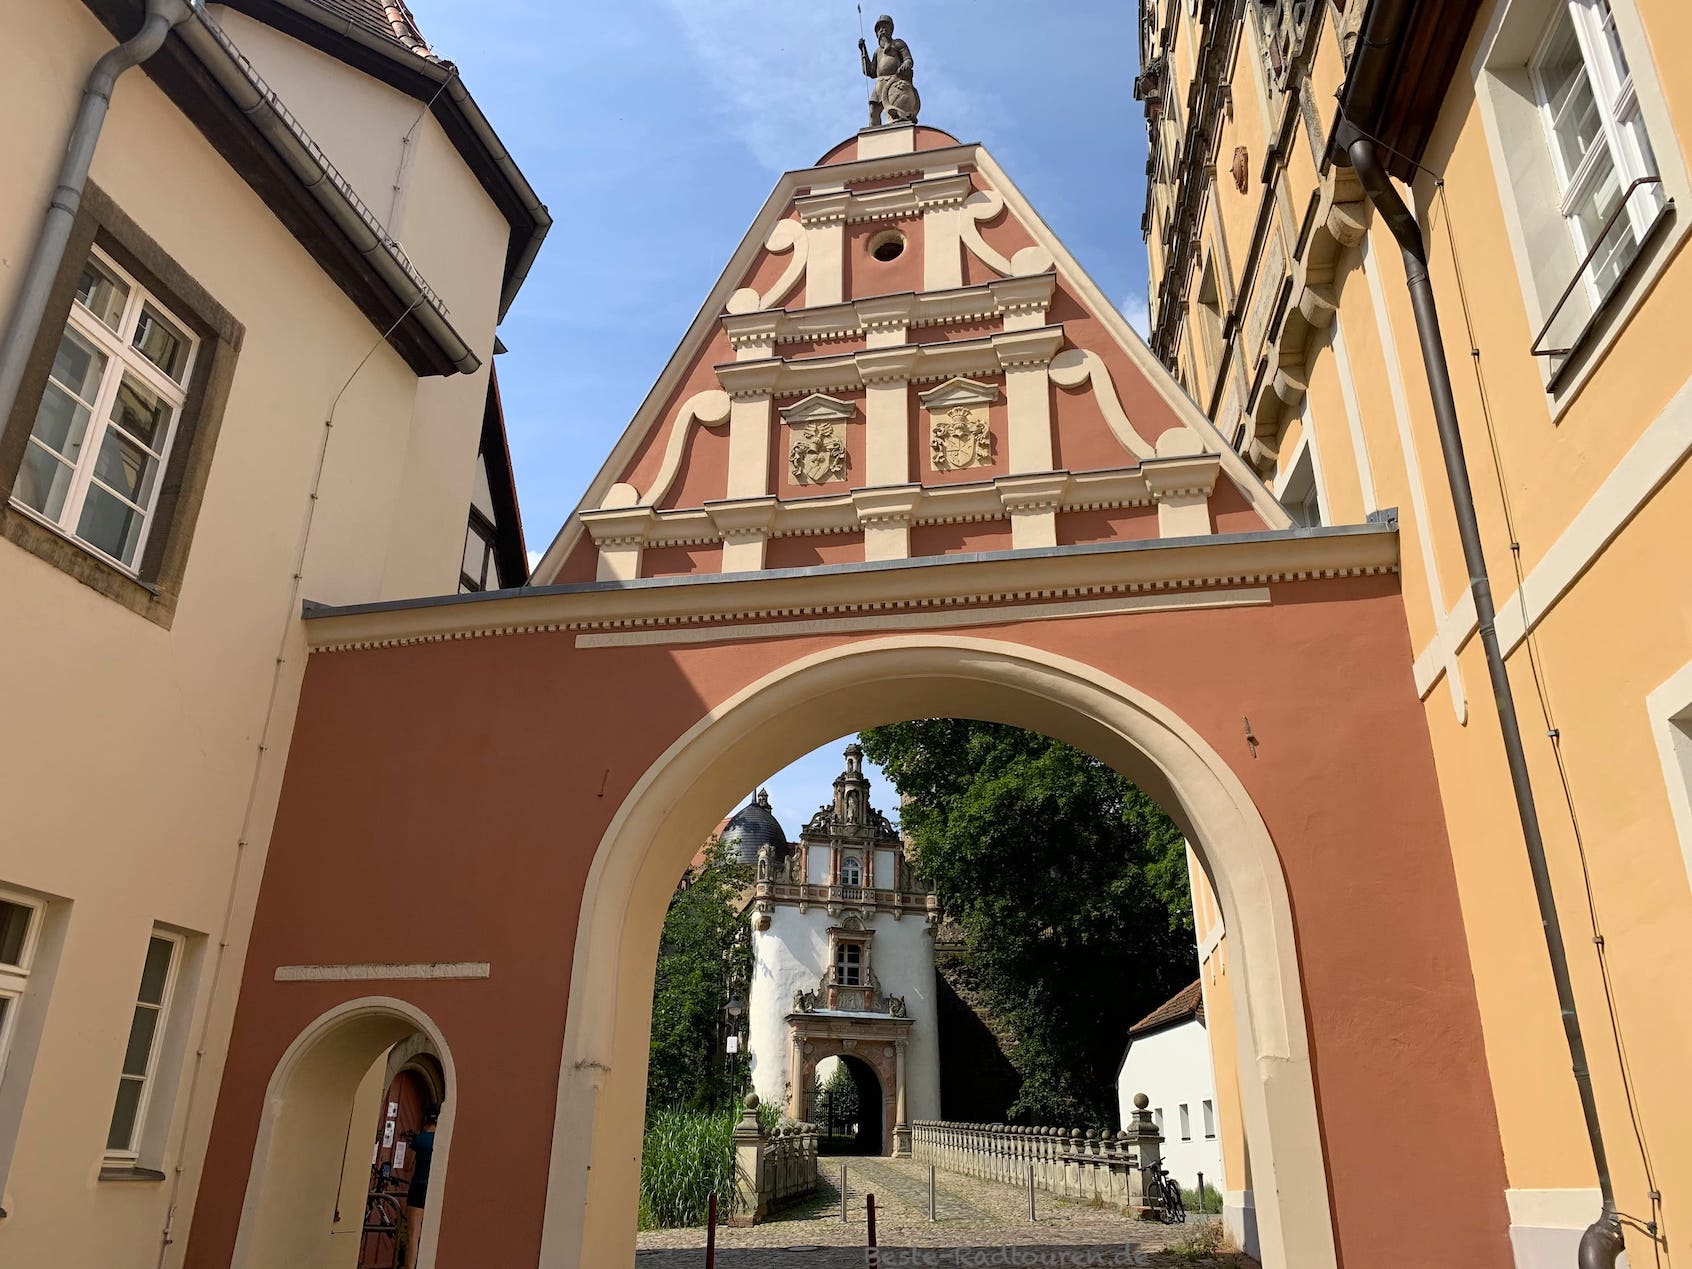 Foto durchs Männekentor: Eingang / Inneres Tor zum Schloss Wiesenburg